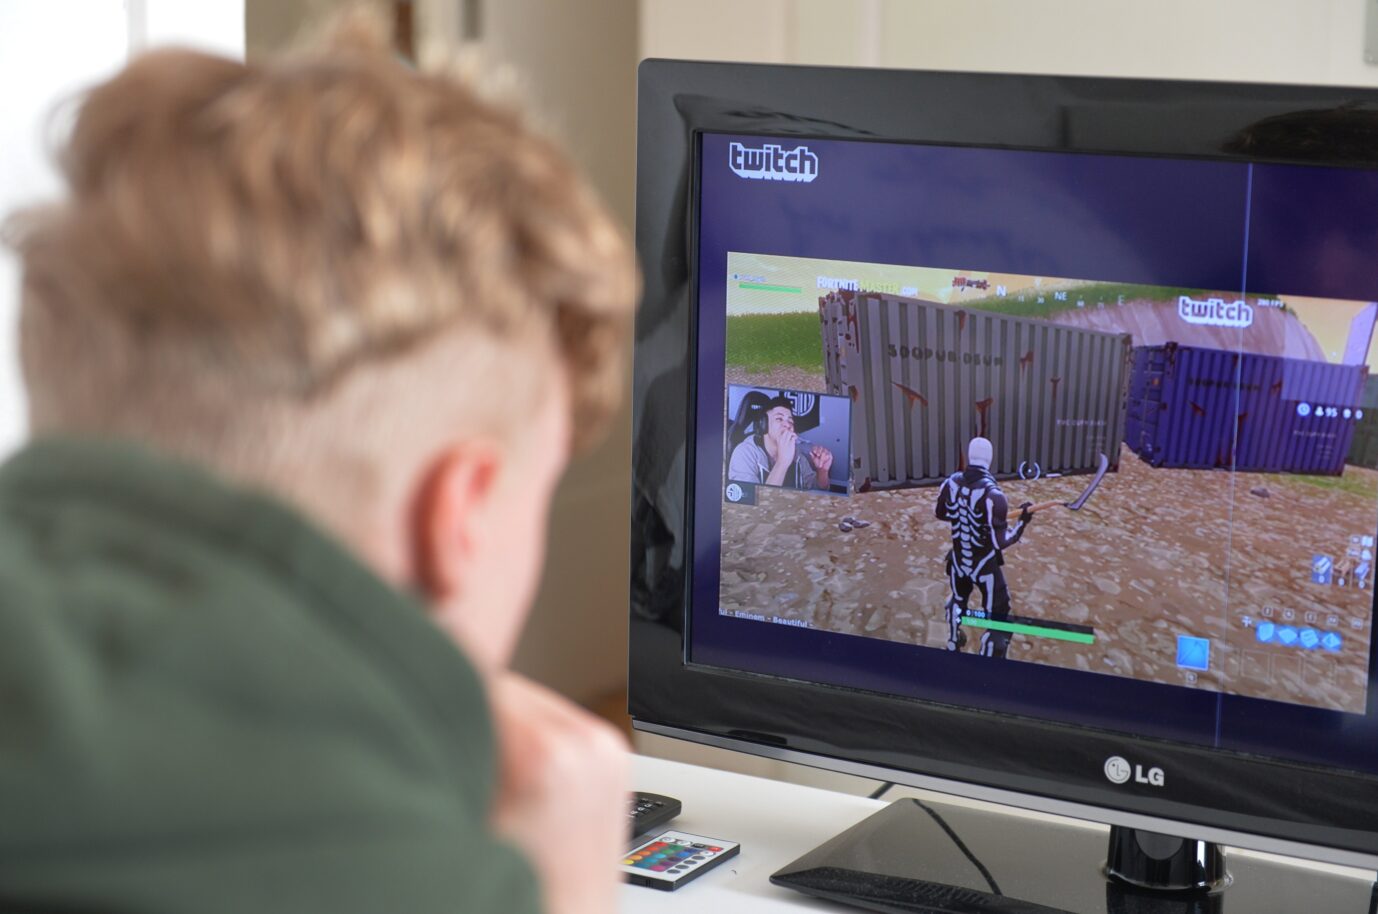 Ein Jugendlicher schaut einem Streamer beim Spielen auf Twitch zu: Im deutschsprachigen Raum tobt der Kulturkampf.